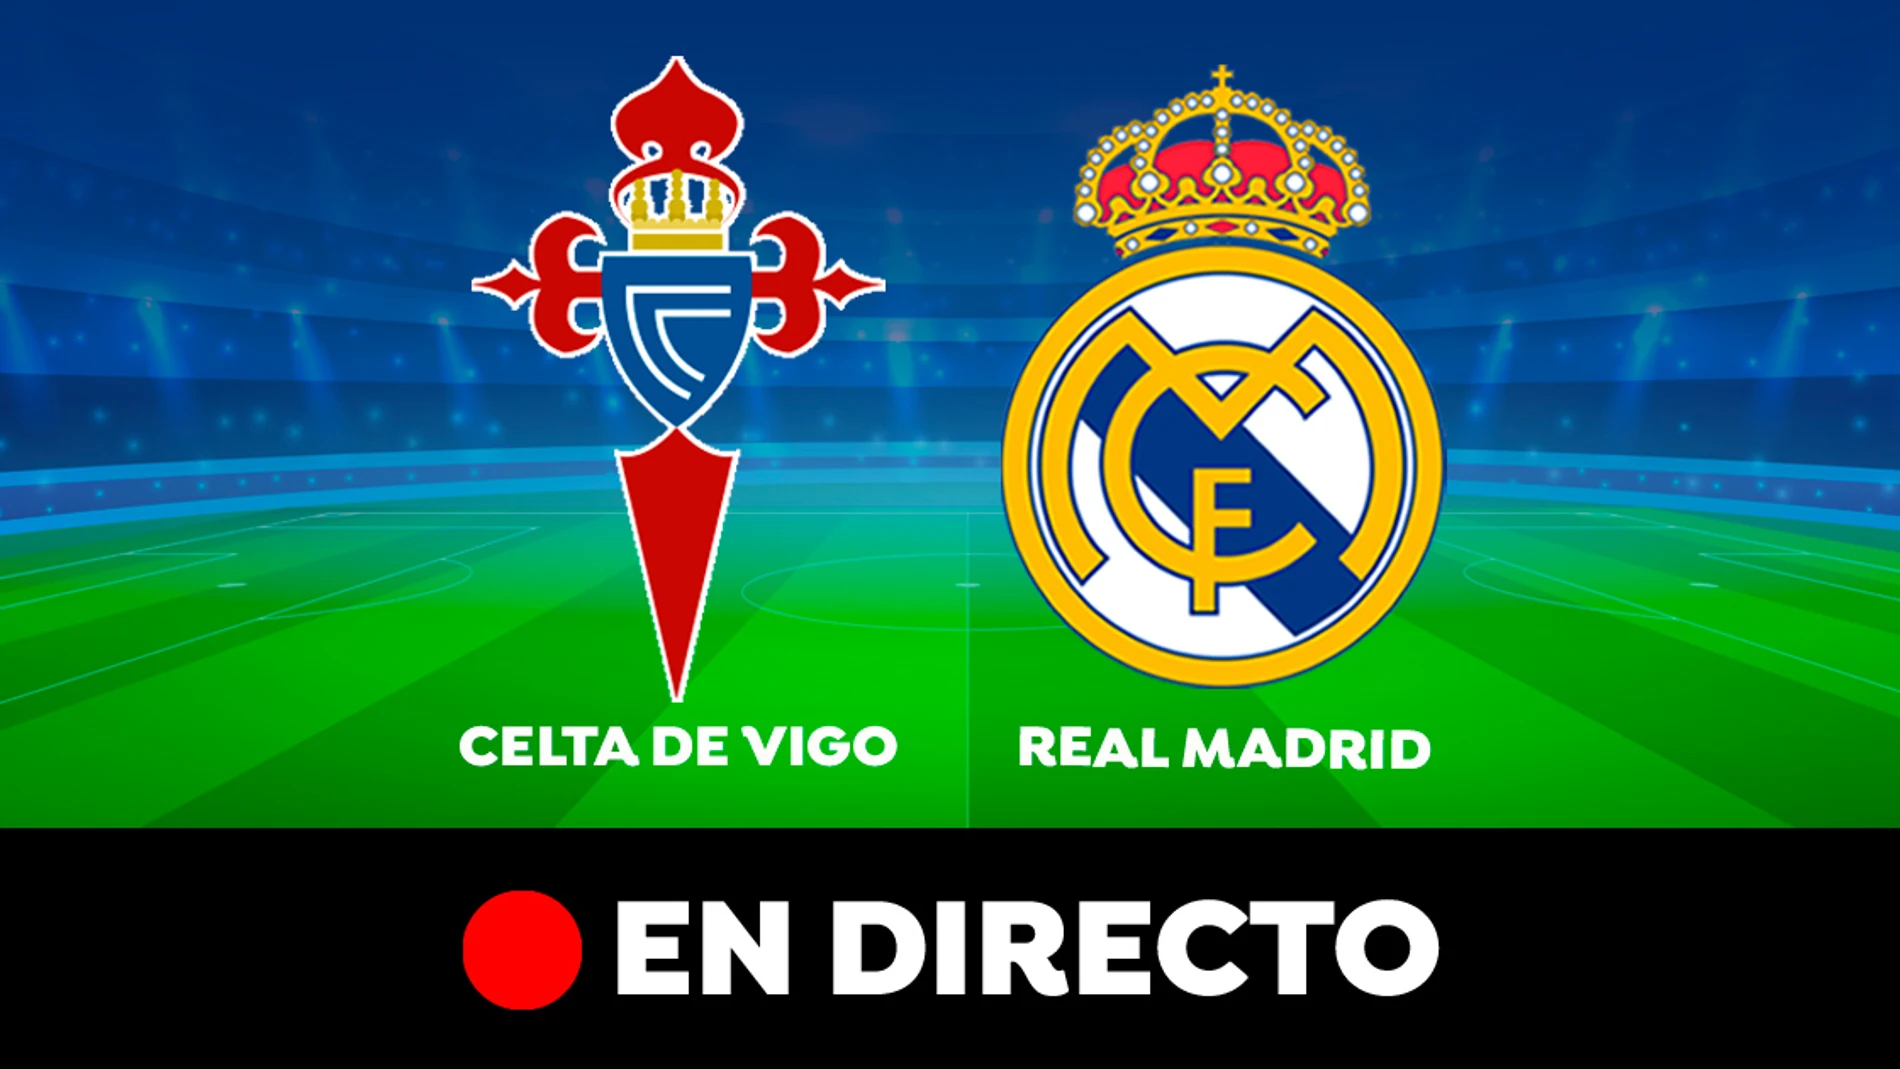 Celta de Vigo - Real Madrid: partido de la Liga Santander, en directo